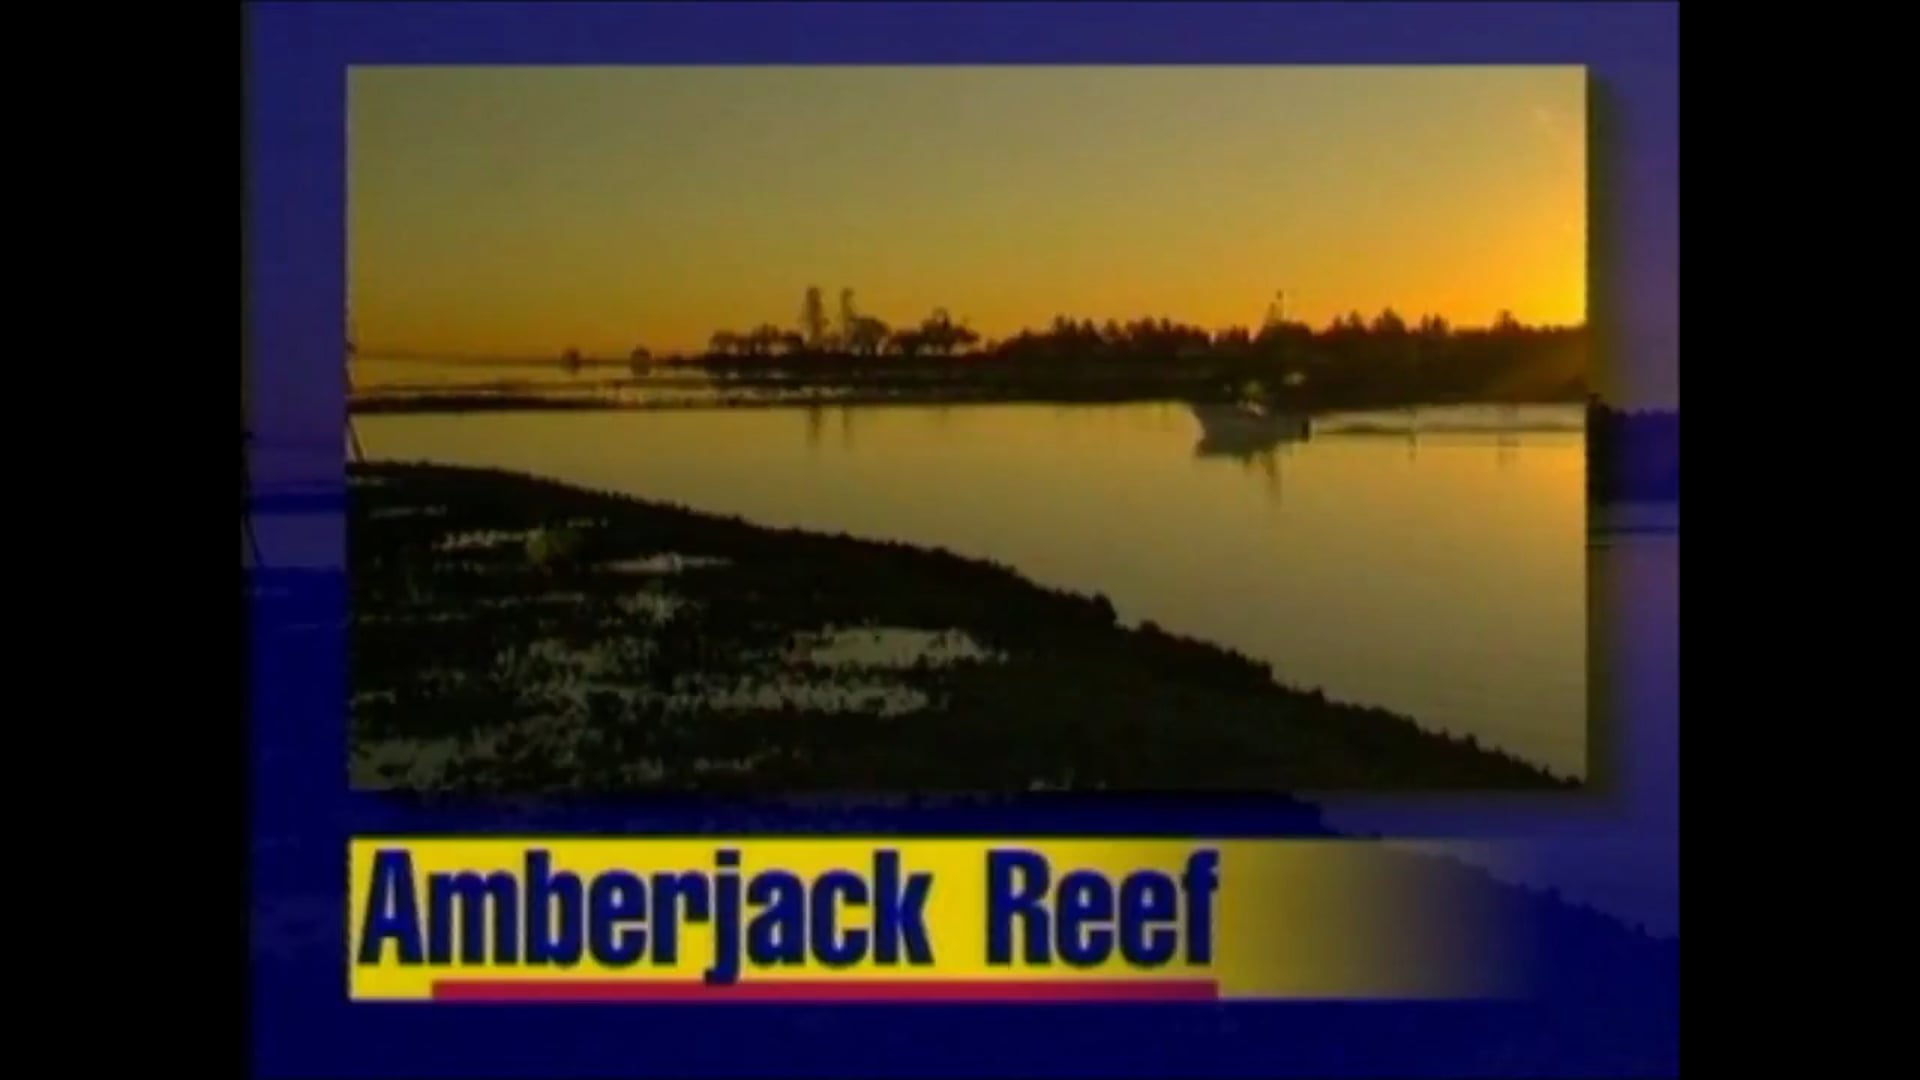 Amberjack Reef off Moreton Is. – John Palermo